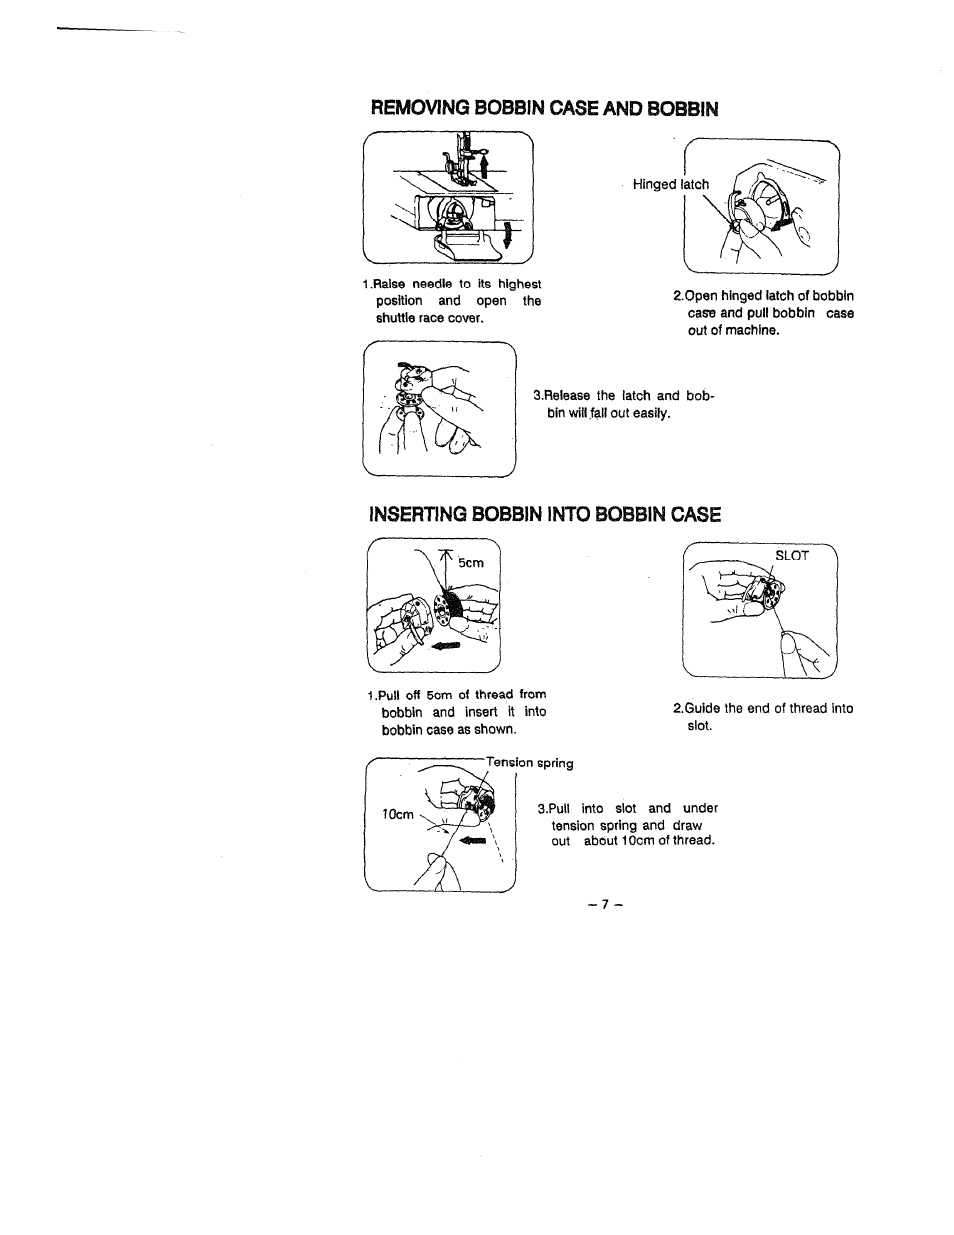 Removing bobbin case and bobbin, Inserting bobbin into bobbin case | SINGER W1418 User Manual | Page 11 / 31